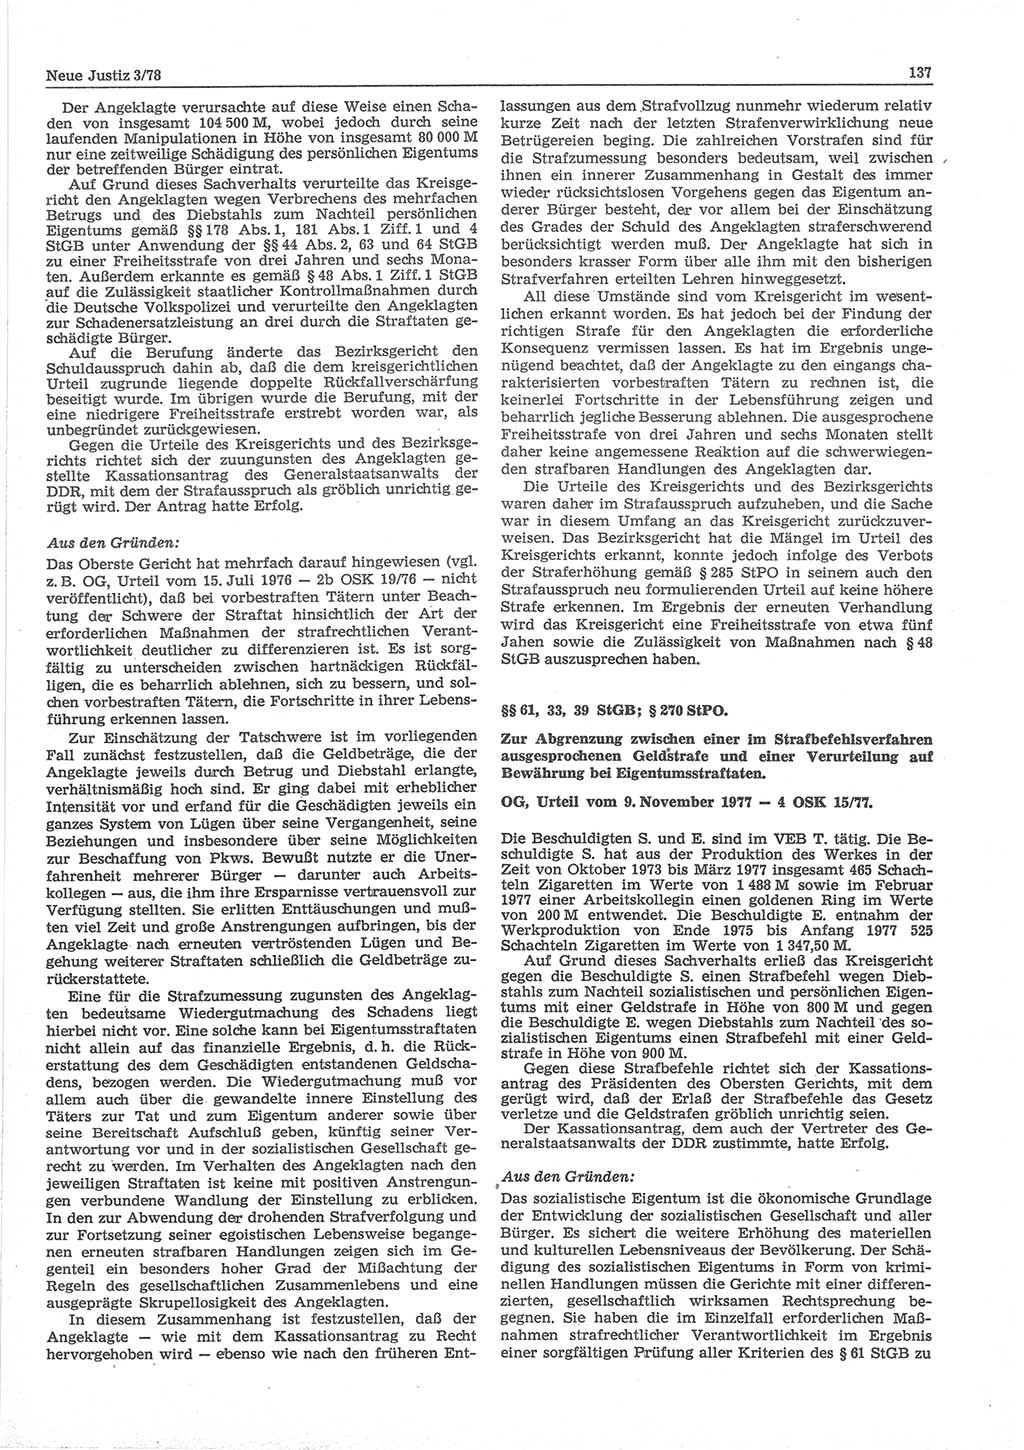 Neue Justiz (NJ), Zeitschrift für sozialistisches Recht und Gesetzlichkeit [Deutsche Demokratische Republik (DDR)], 32. Jahrgang 1978, Seite 137 (NJ DDR 1978, S. 137)